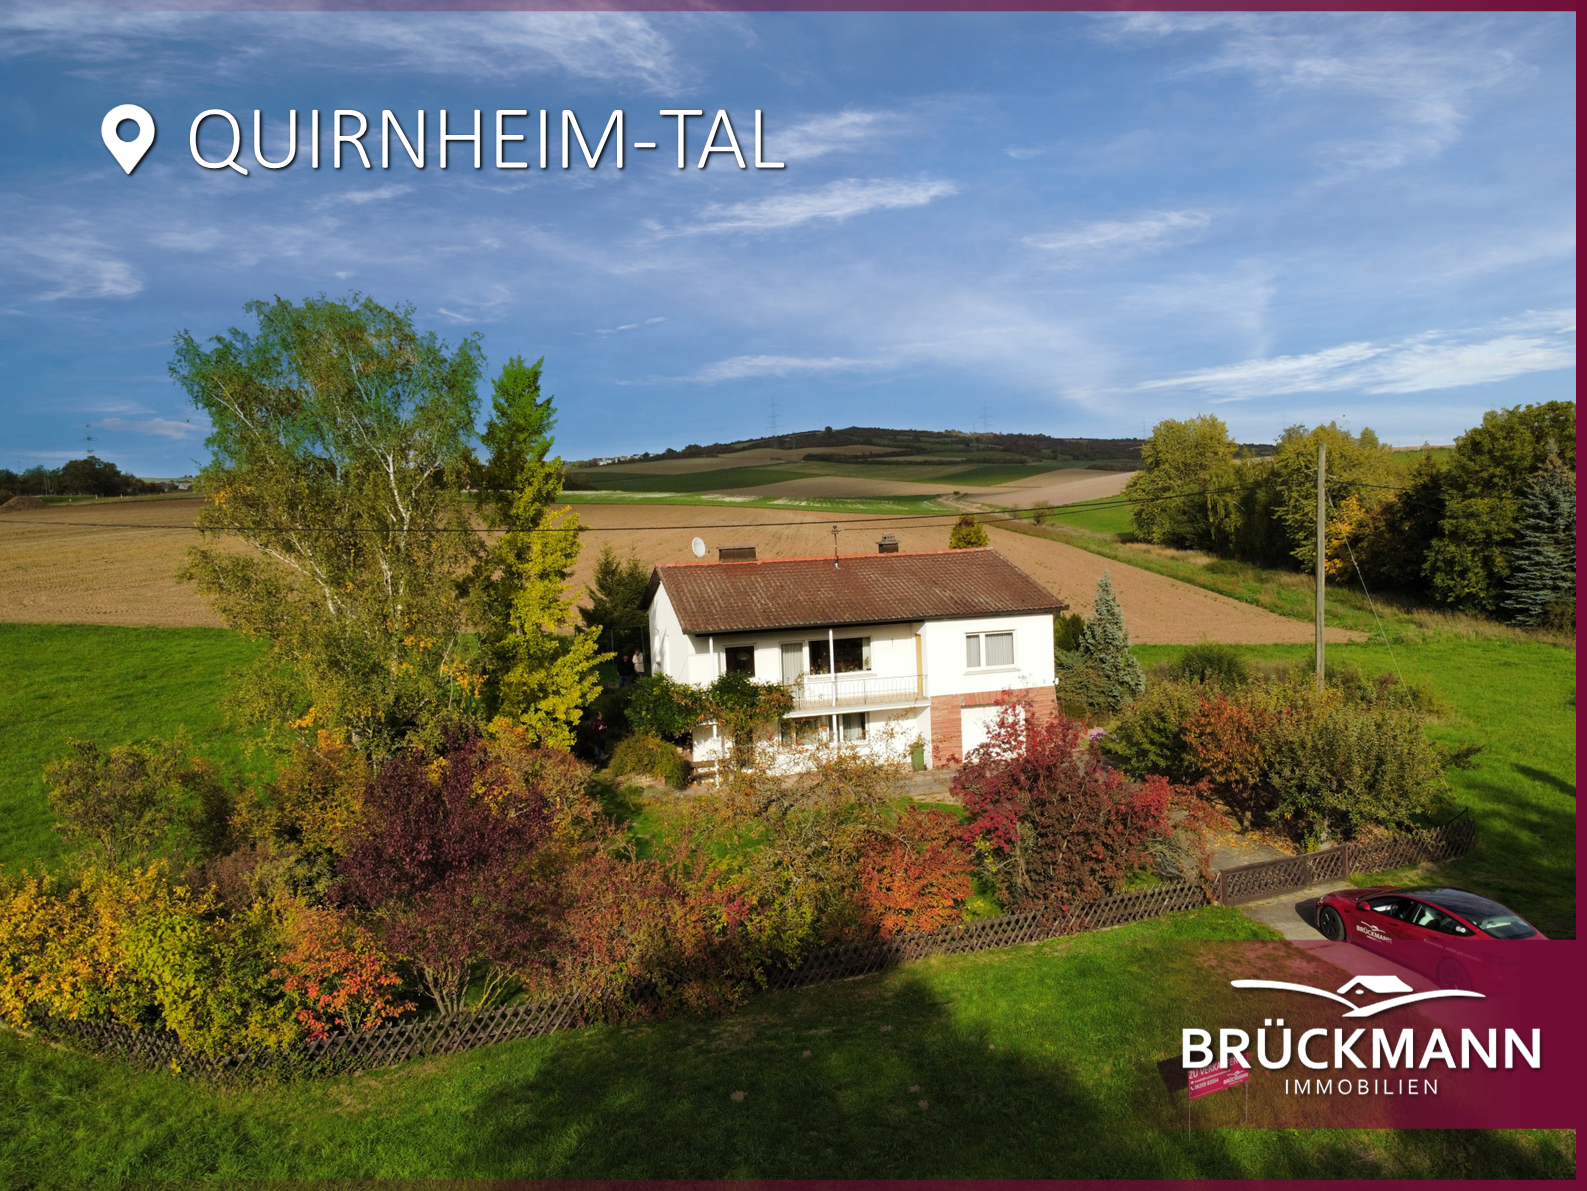 Freistehendes EFH auf großzügigem Grundstück in exklusiver Feldrandlage mit traumhafter Aussicht!, 67280 Quirnheim-Tal, Einfamilienhaus